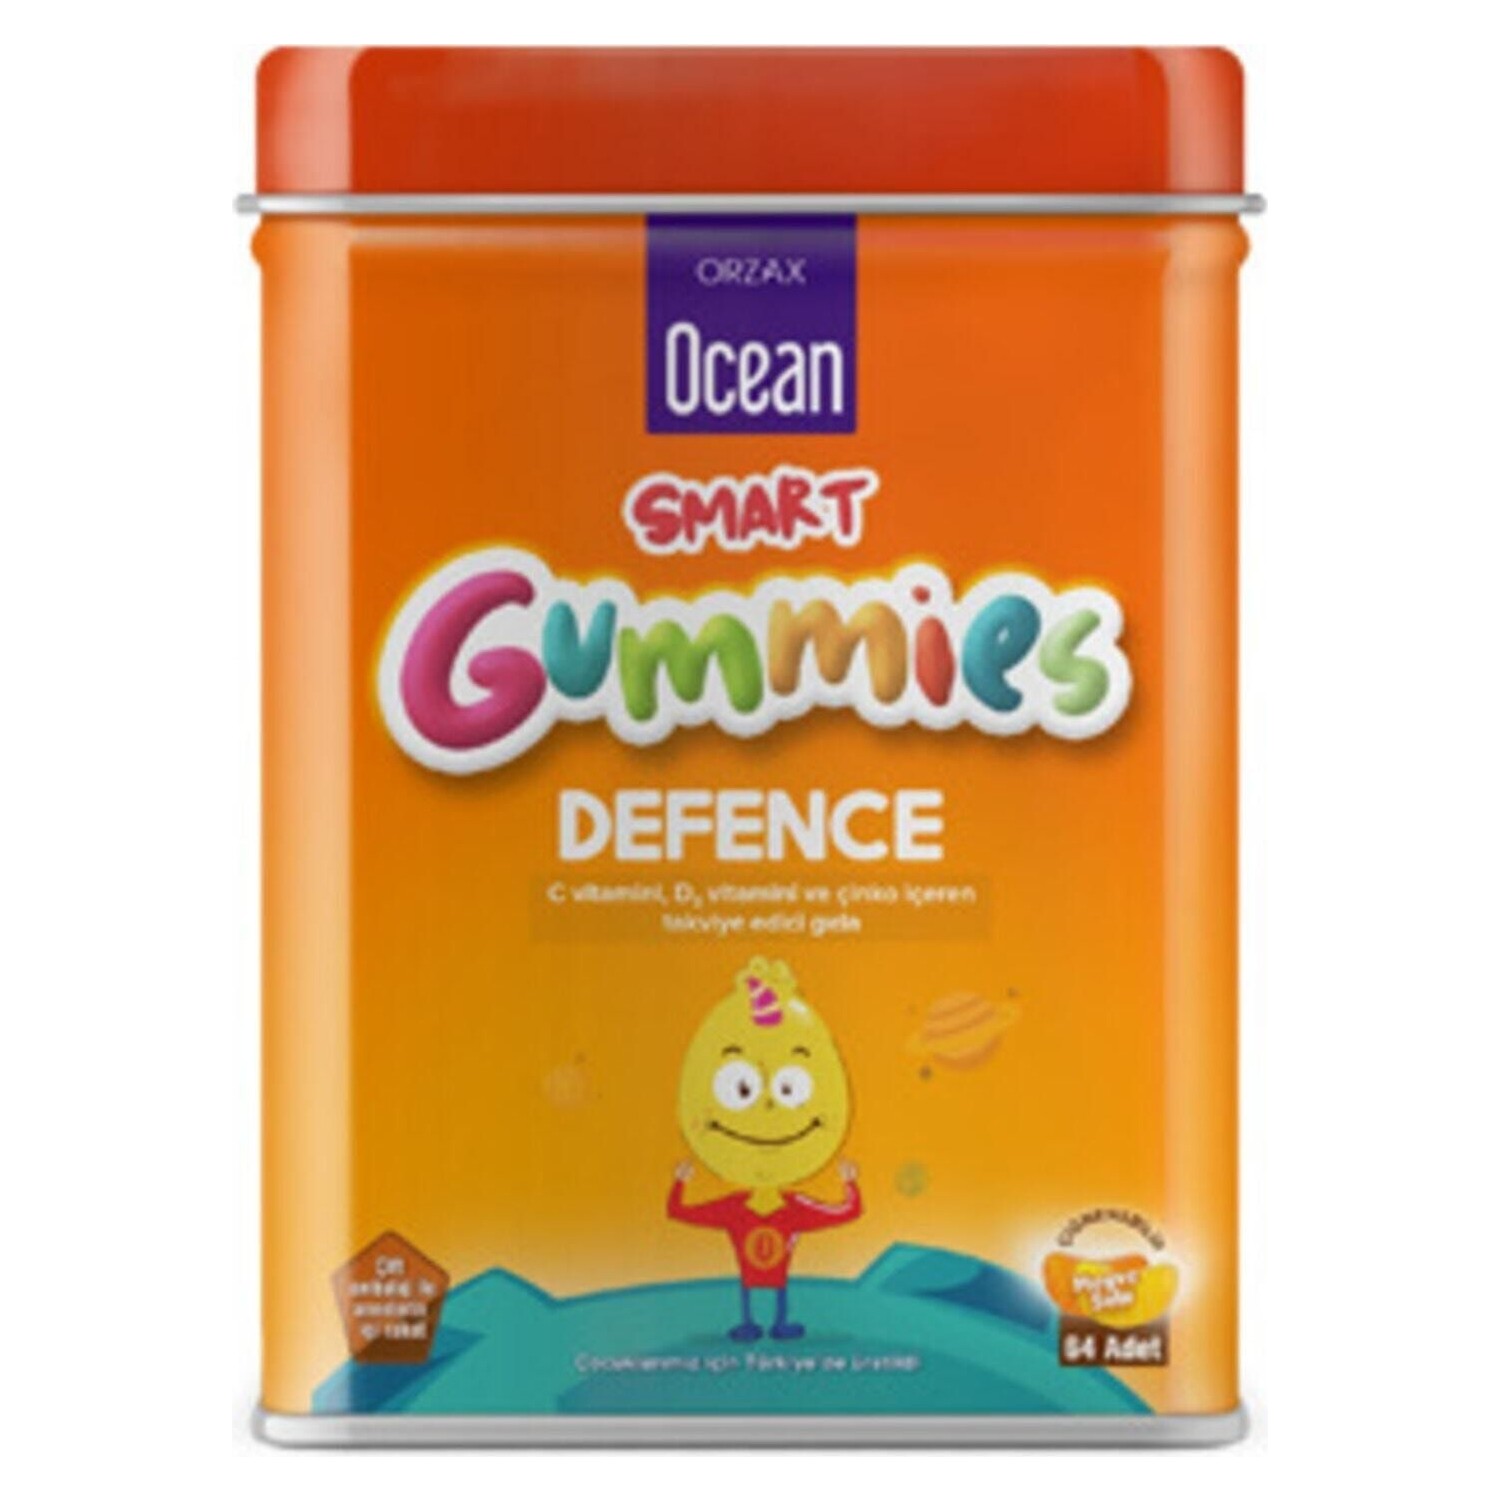 Мультивитаминная добавка Ocean Smart Gummies Defense мультивитаминная добавка ocean smart gummies 2 упаковки по 64 таблетки